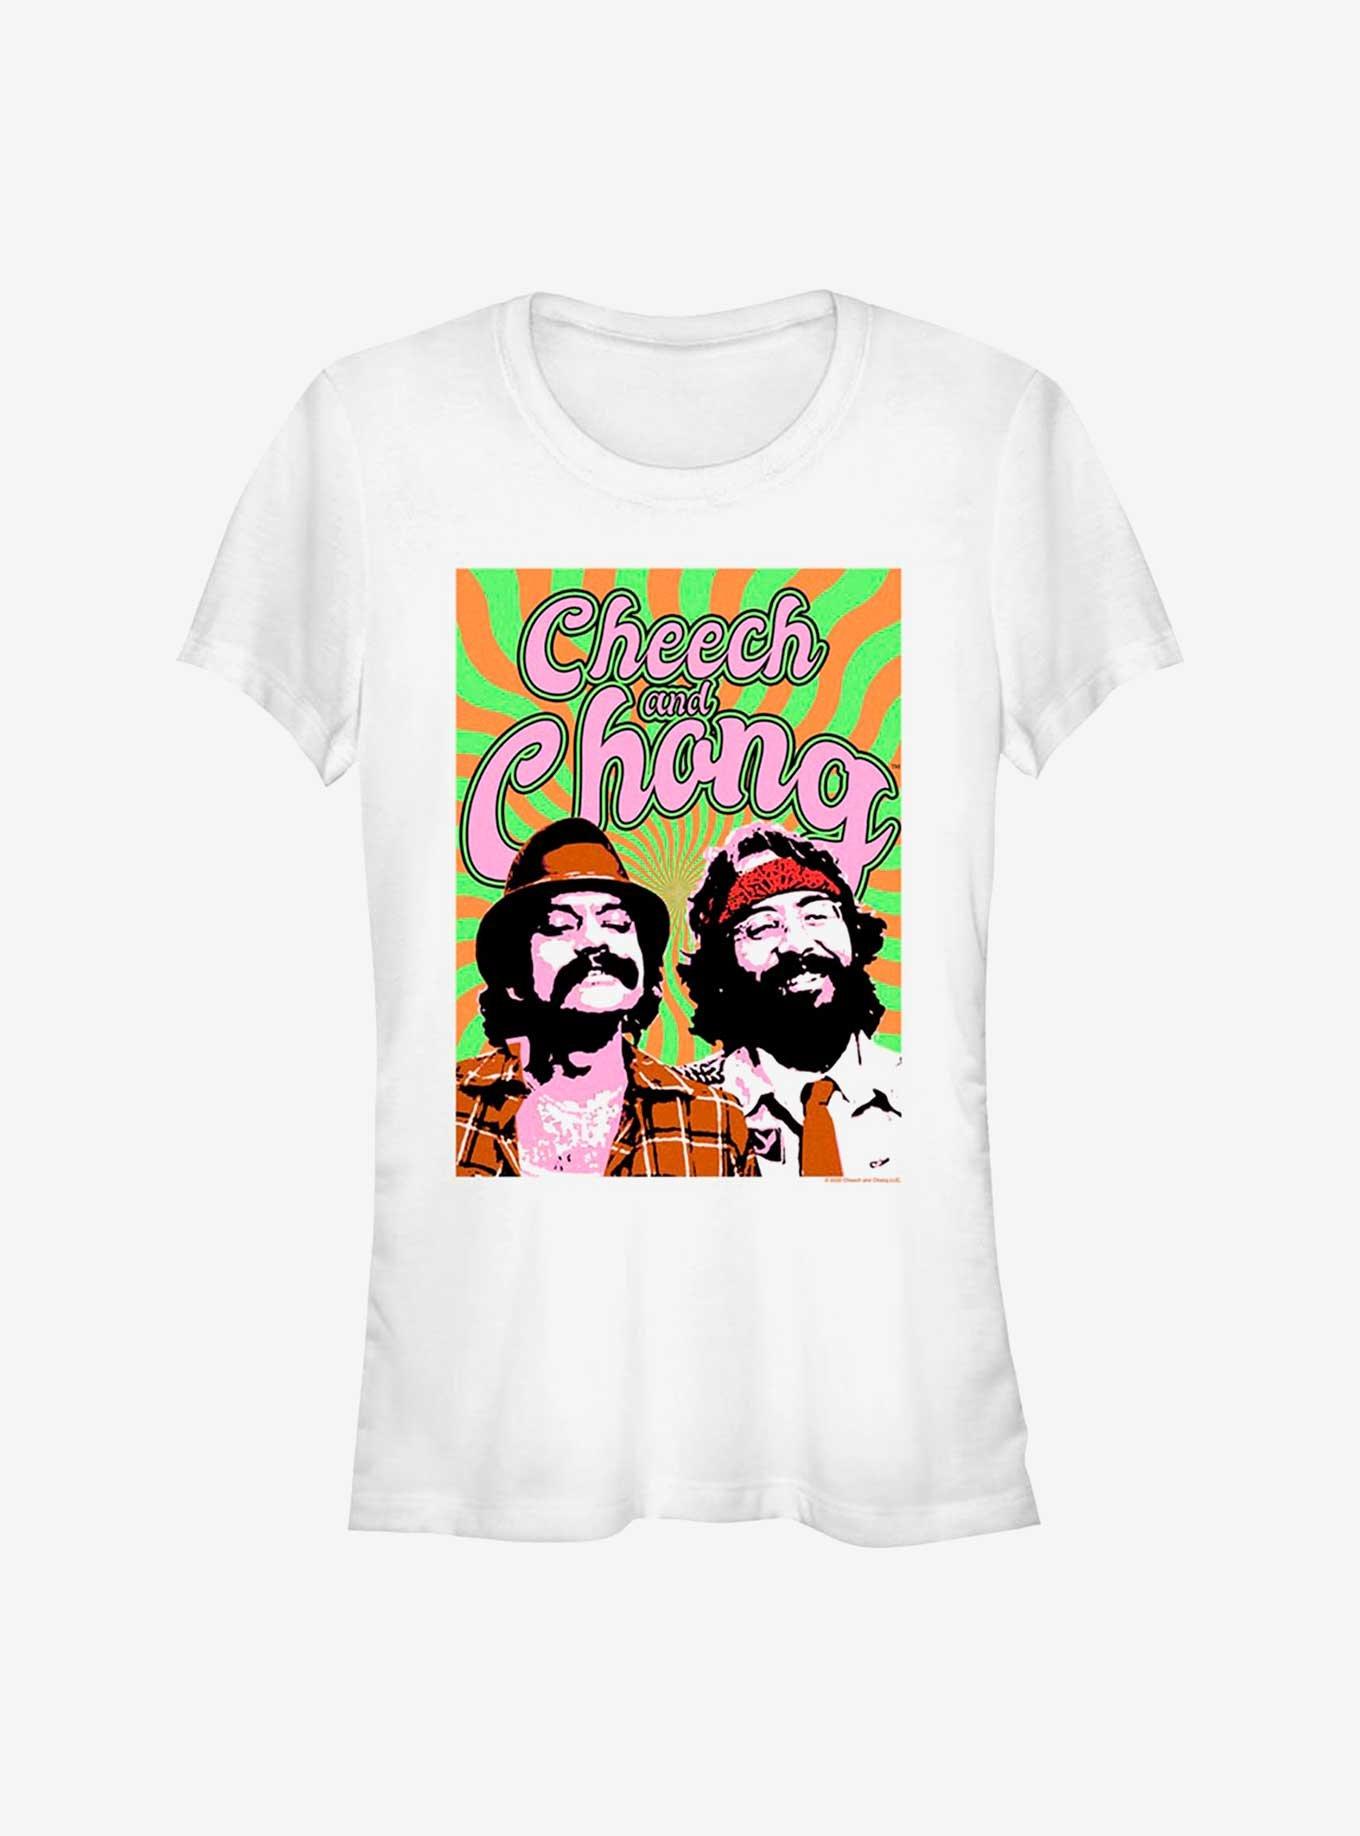 Cheech And Chong Trippy Girls T-Shirt